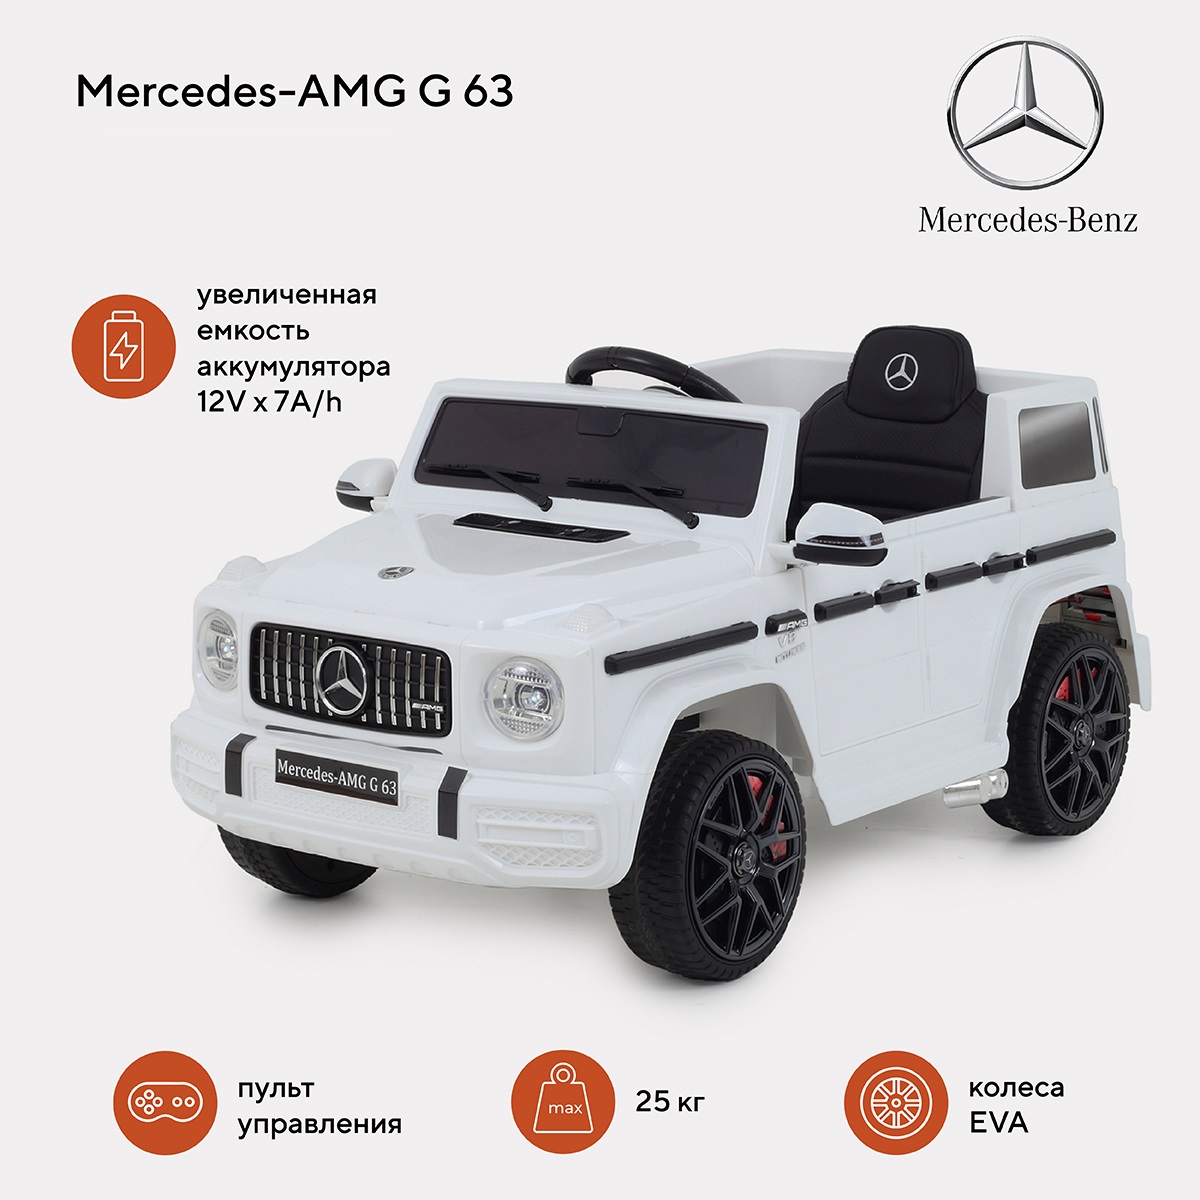 Электромобиль детский Mercedes-AMG G 63 белый